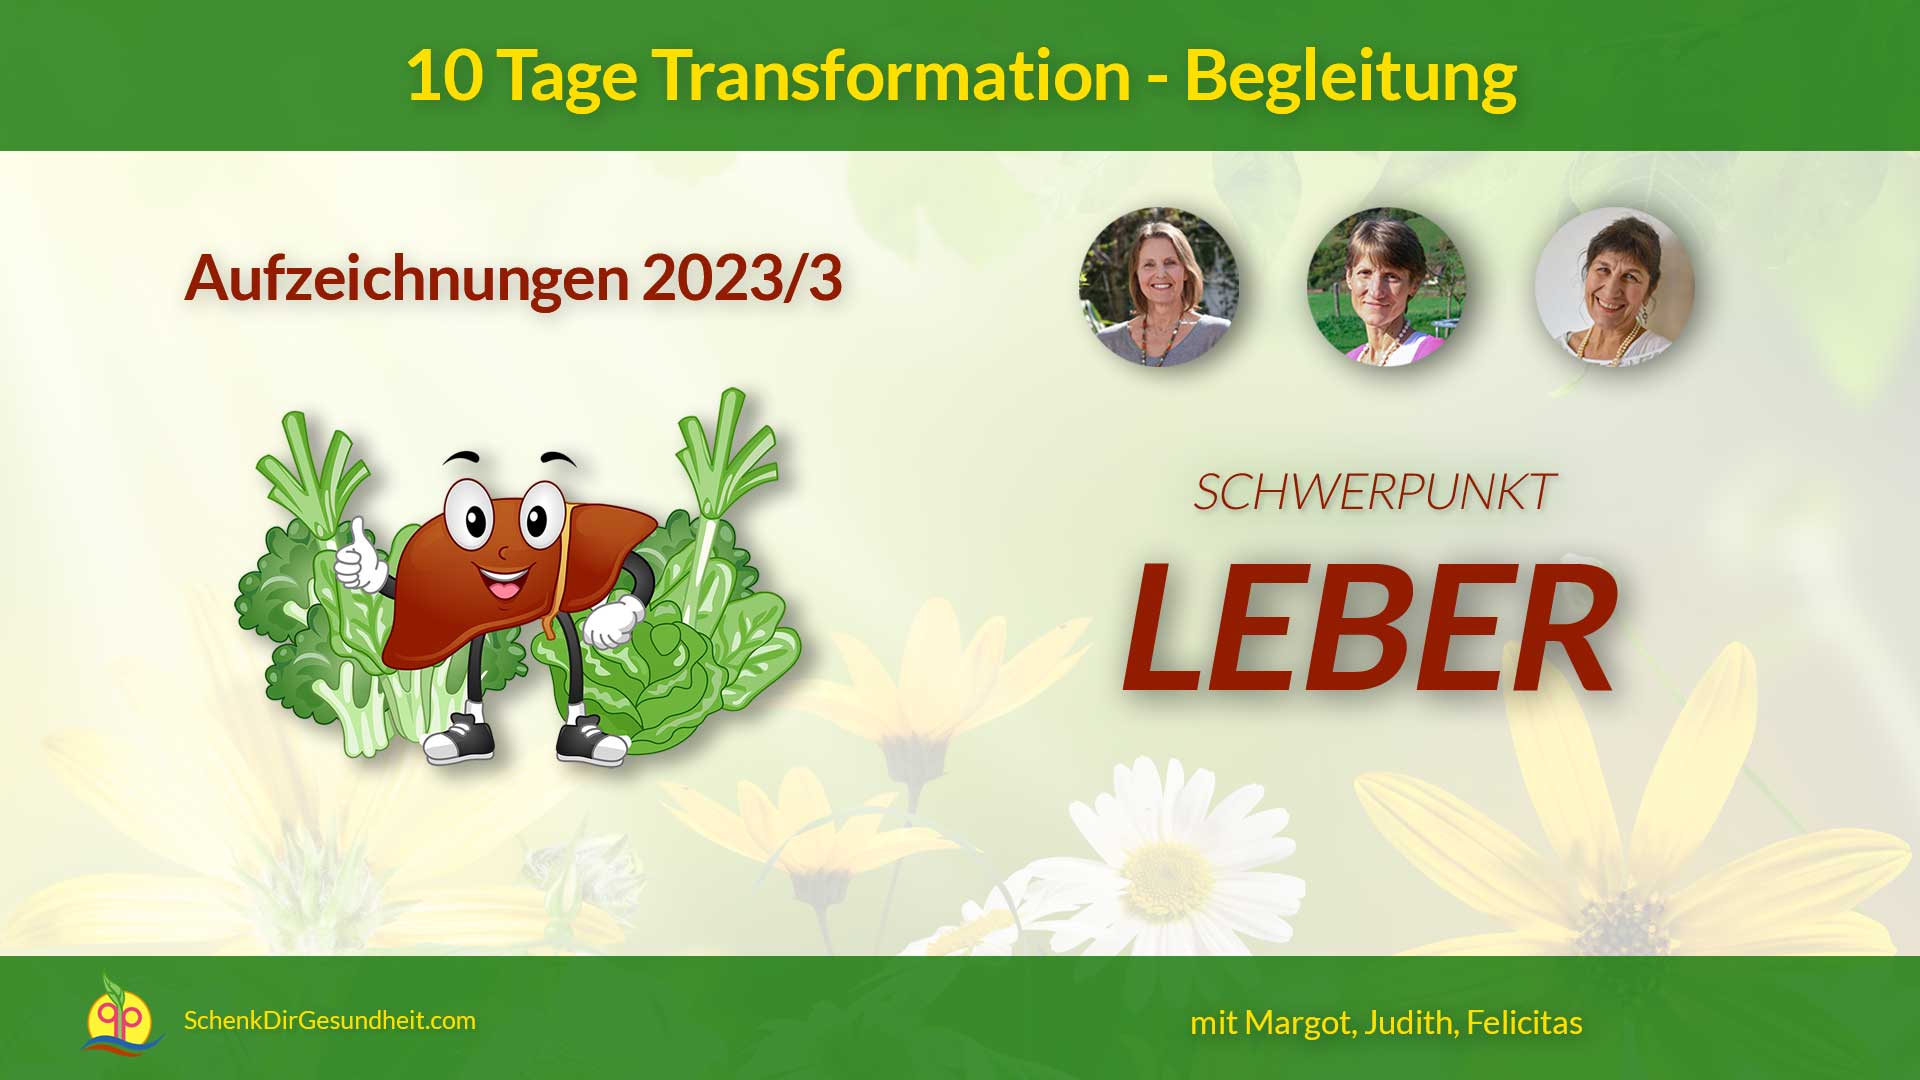 schenkdirgesundheit.com - produkt k07 - aufzeichnungen 10 tage transformation begleitung - Banner BB2